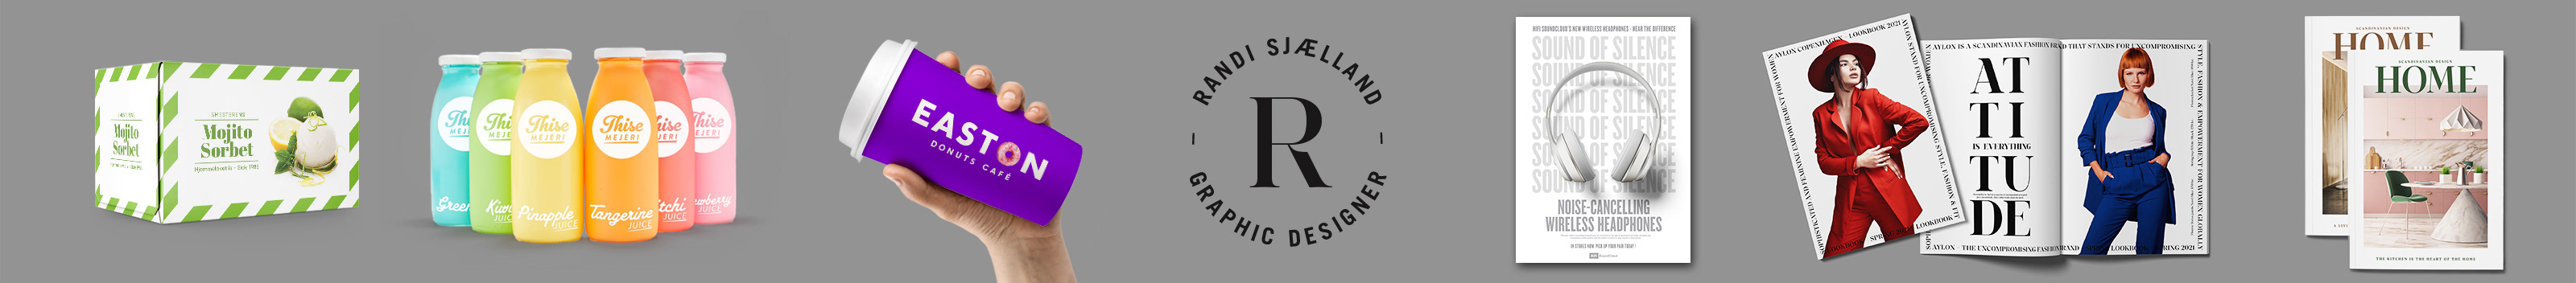 Randi Sjaelland's profile banner